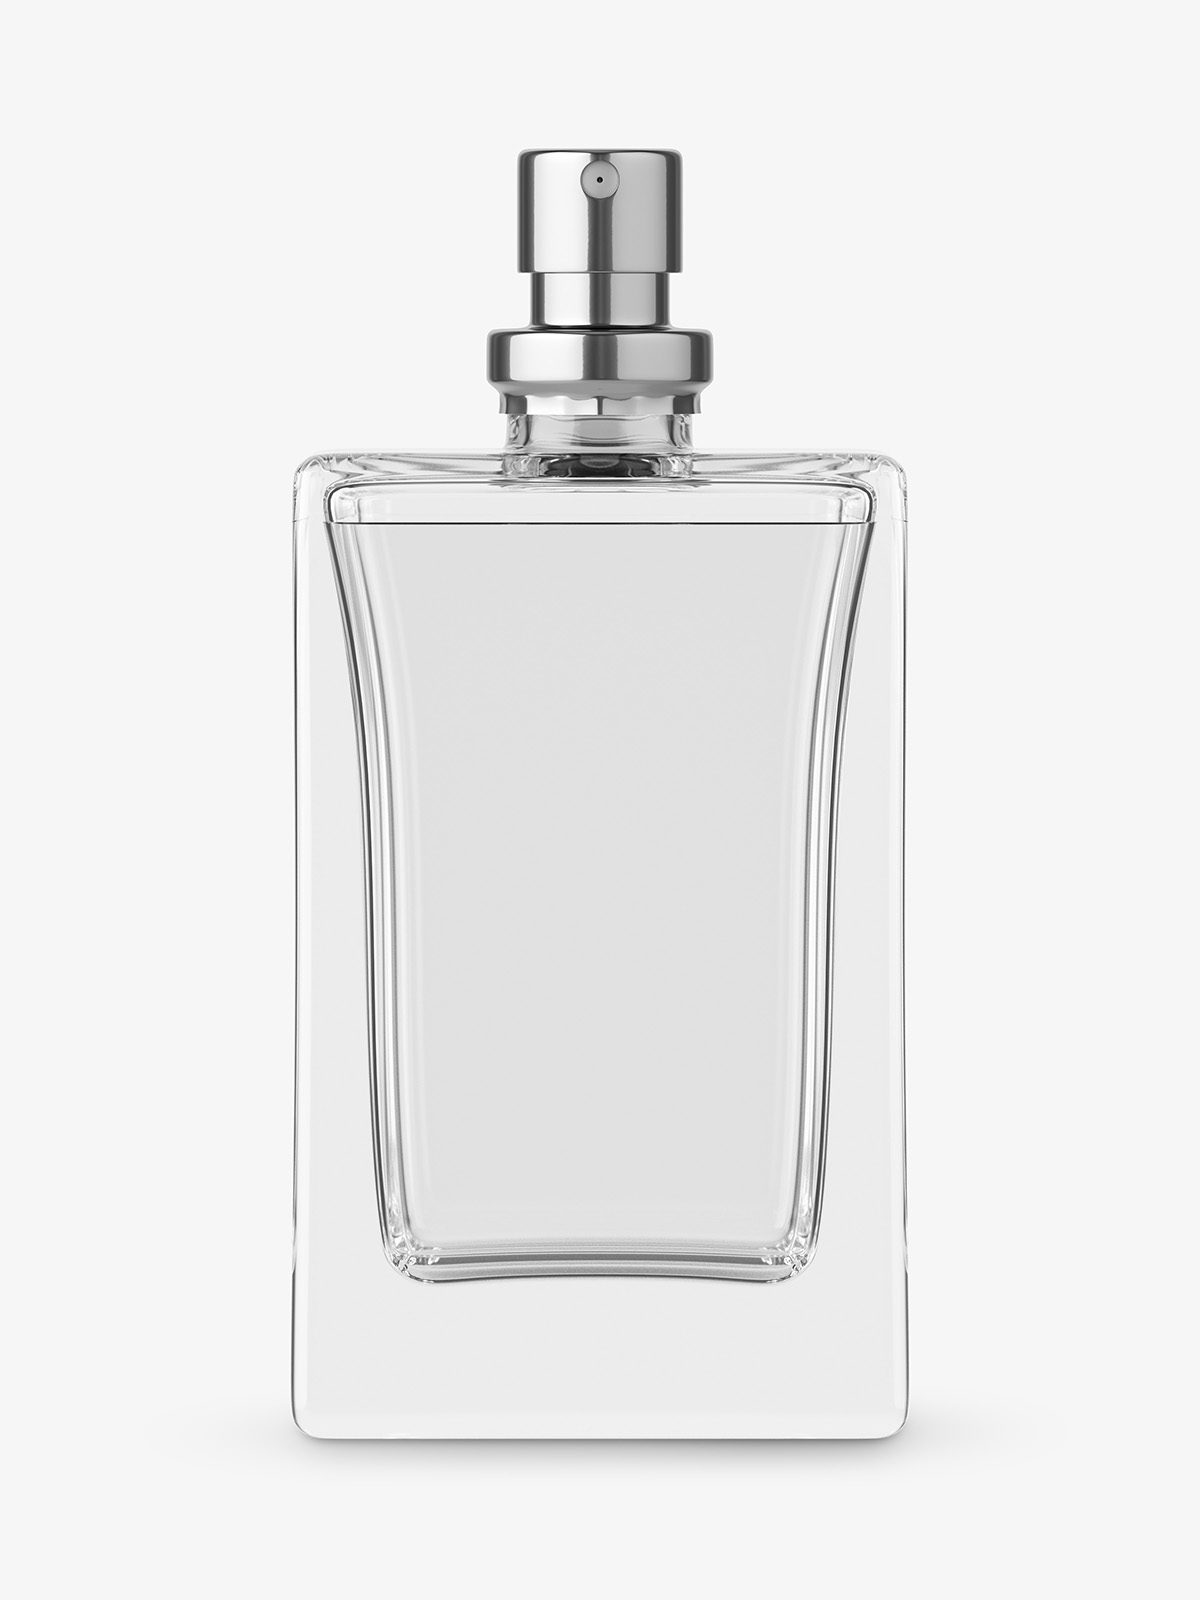 Perfume bottle mockup - Smarty Mockups